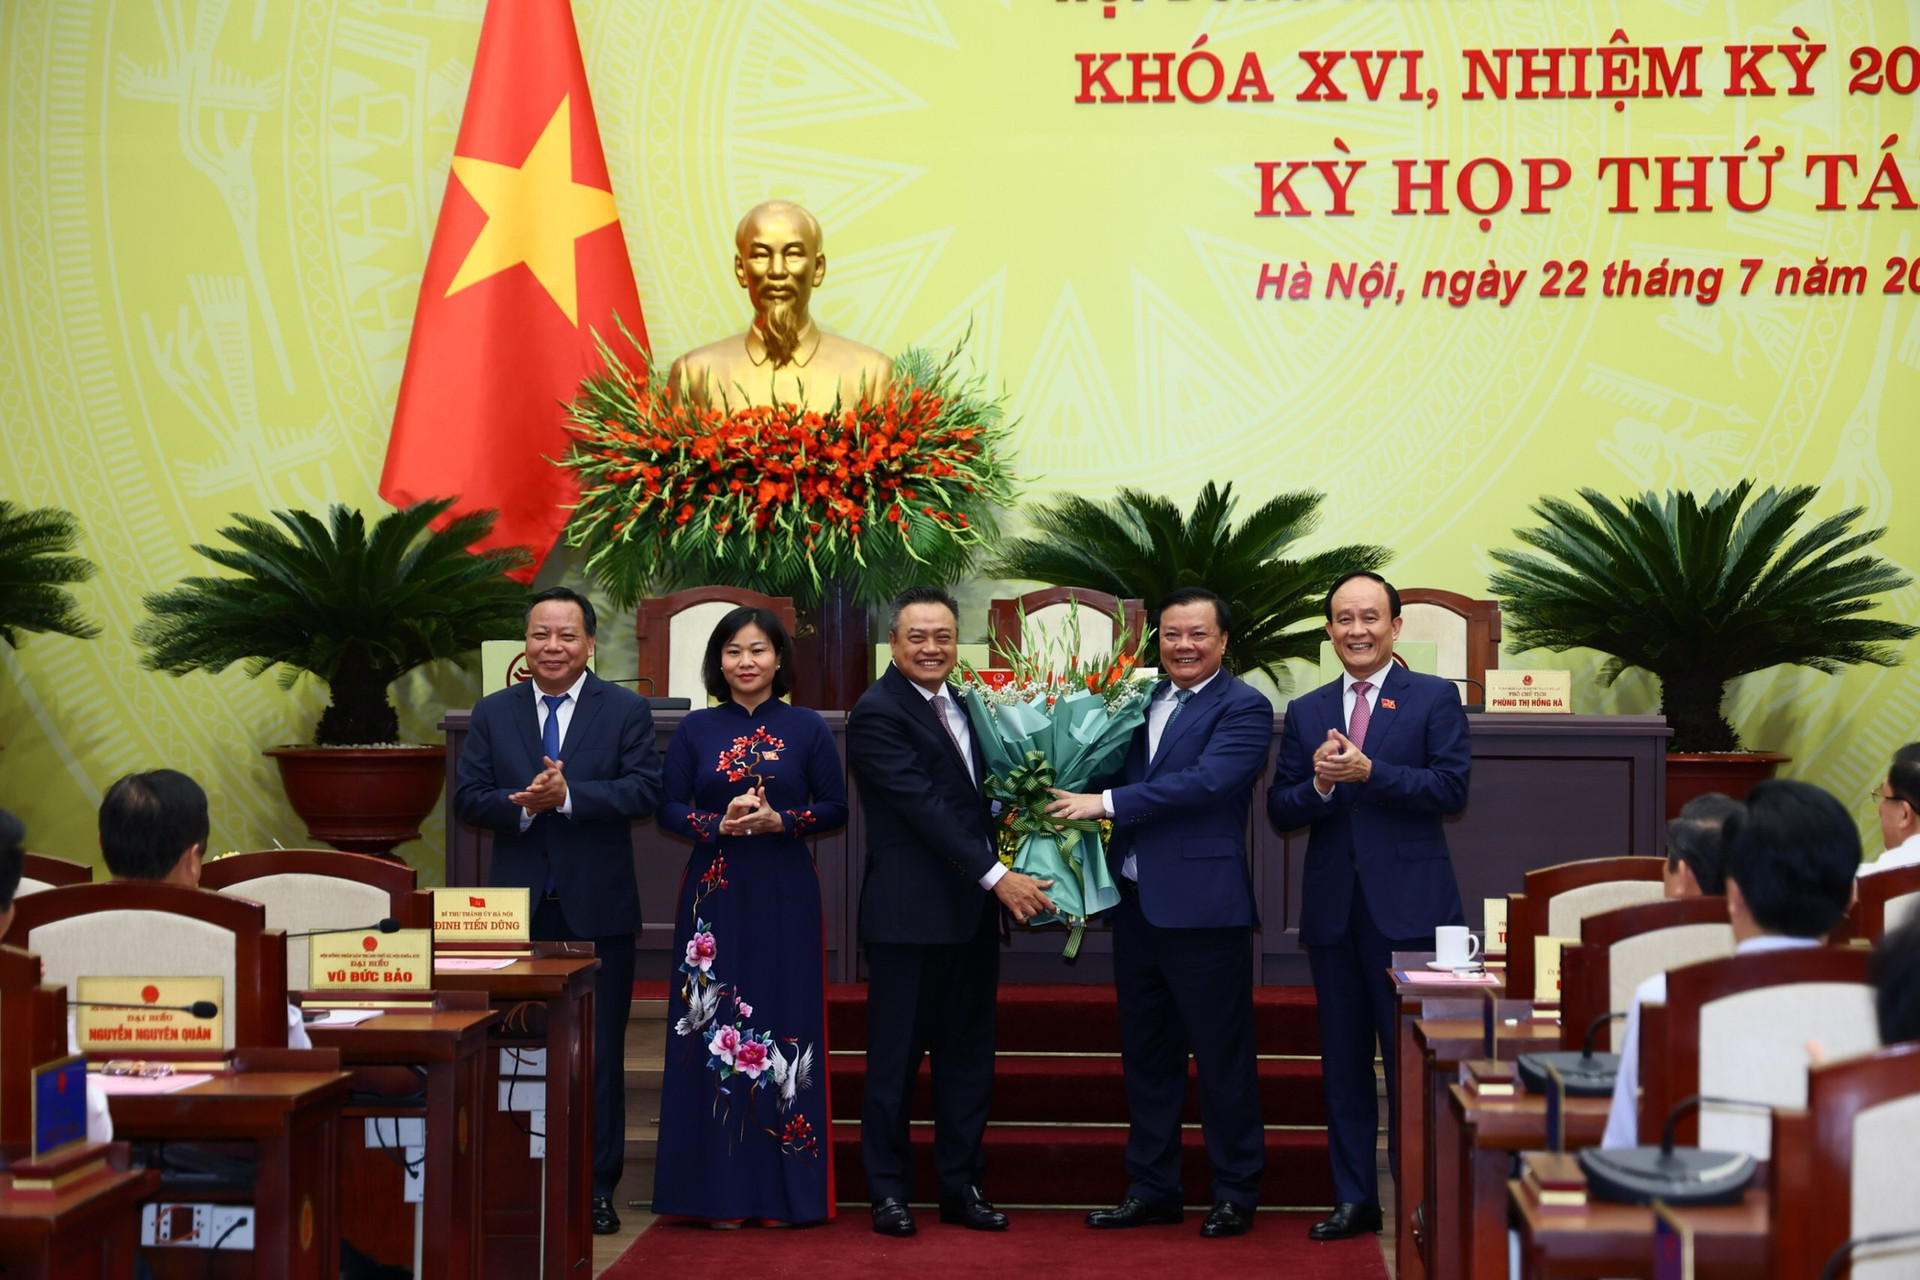 100% đại biểu bầu ông Trần Sỹ Thanh làm Chủ tịch UBND thành phố Hà Nội - Ảnh 1.